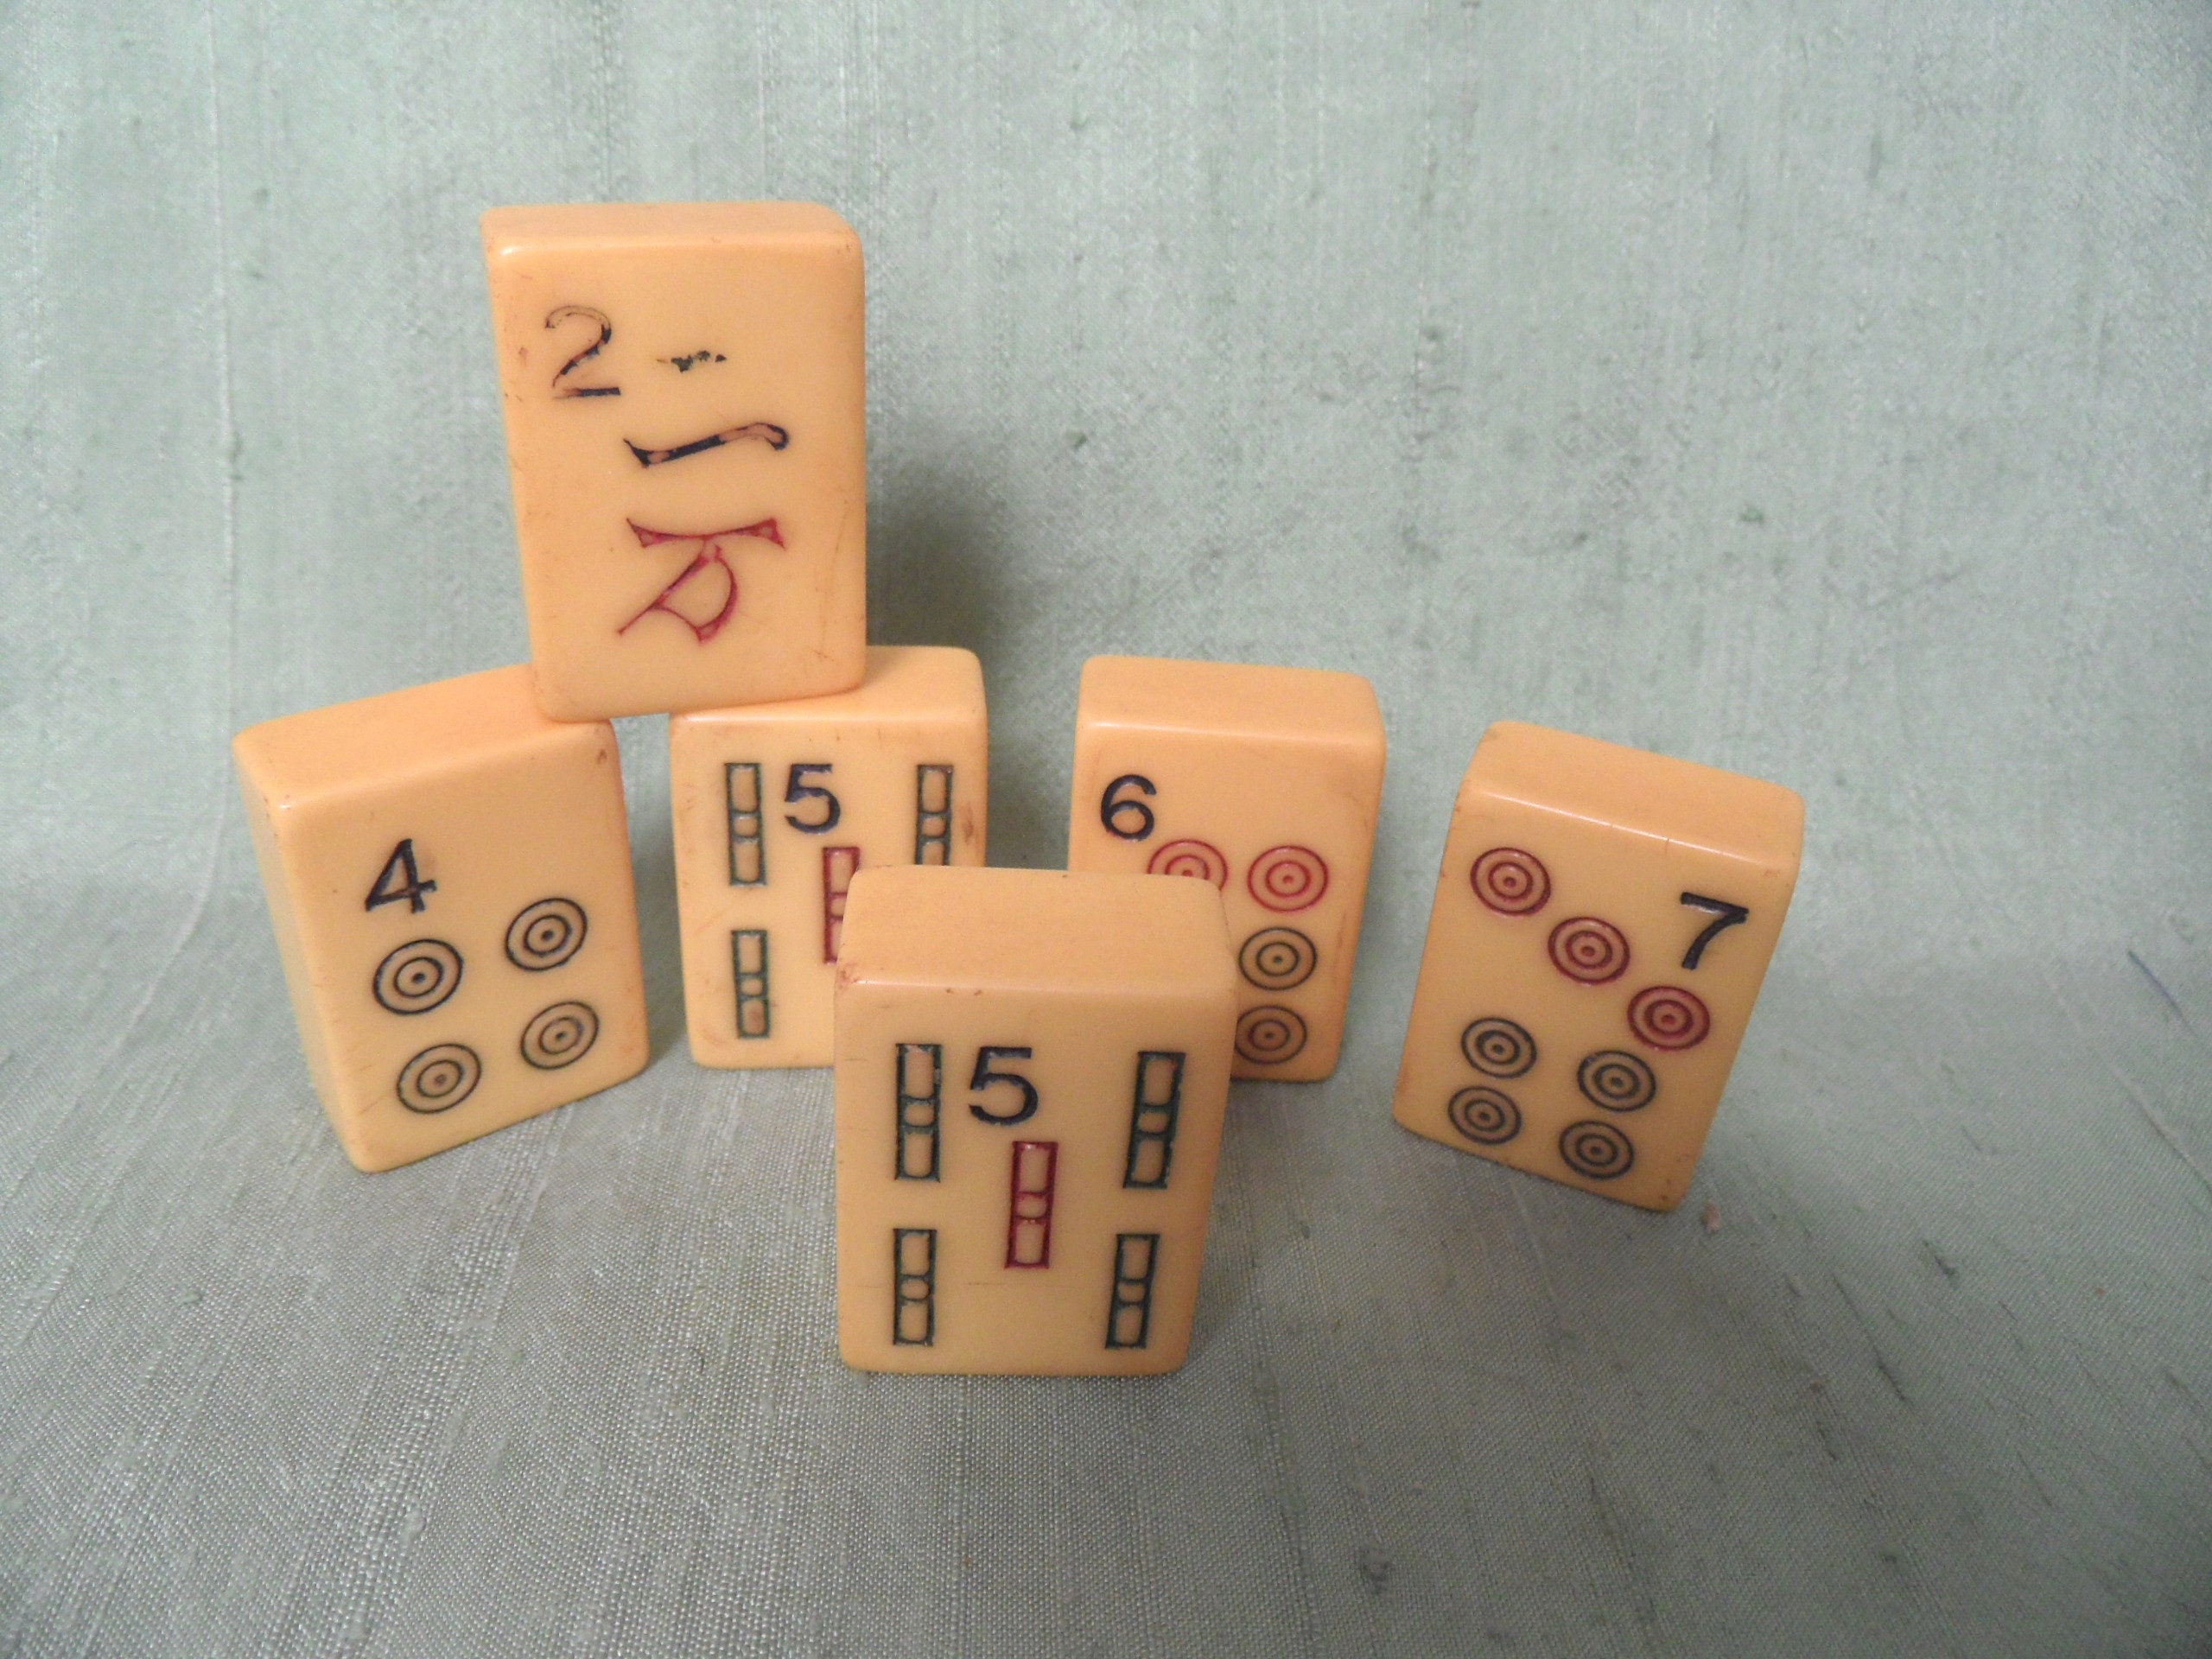 Game pieces cardboard mahjong tile pieces lot scrapbooking craft supplies